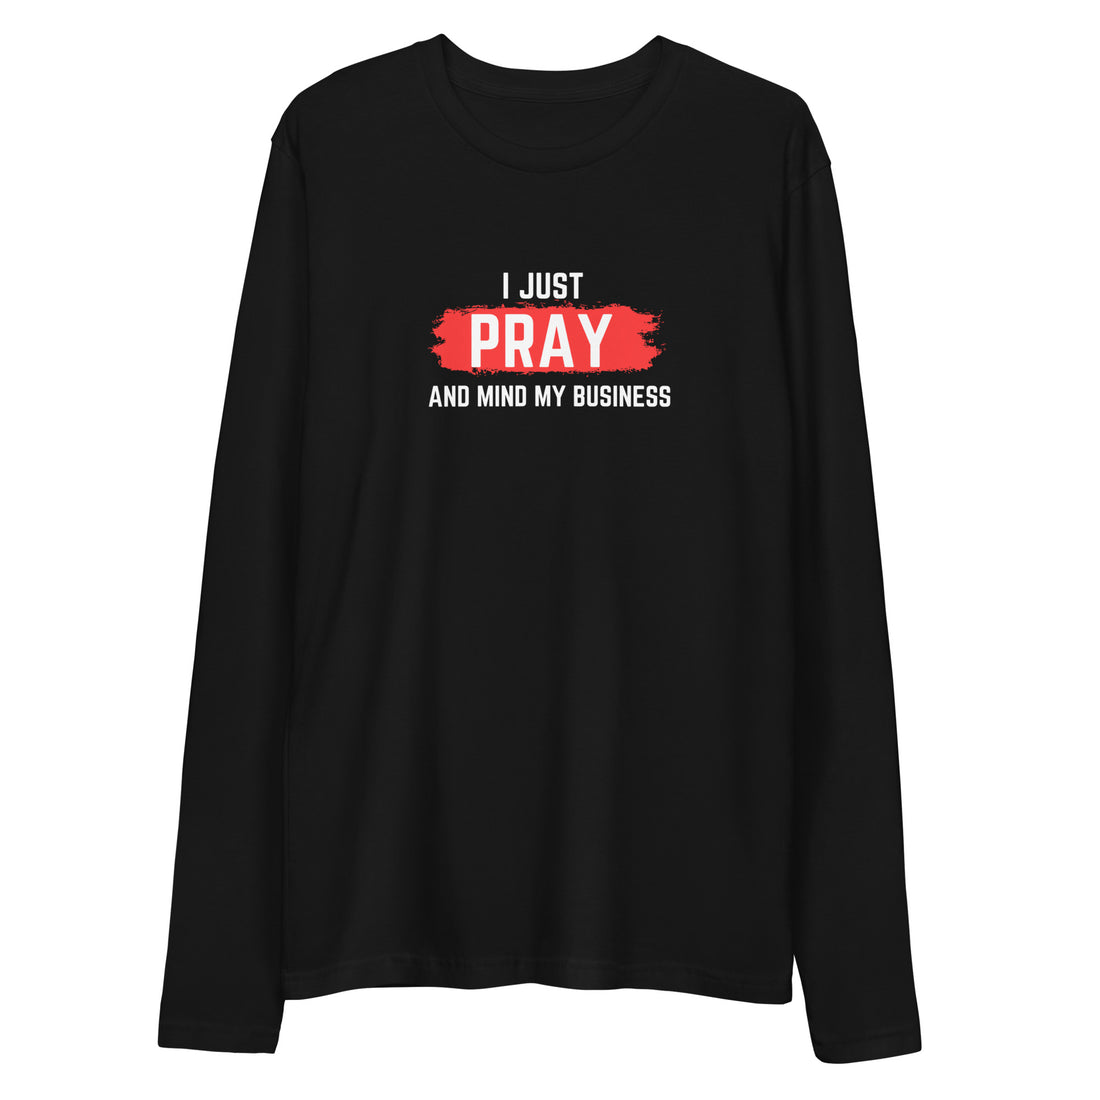 I Just Pray (Long Sleeve)